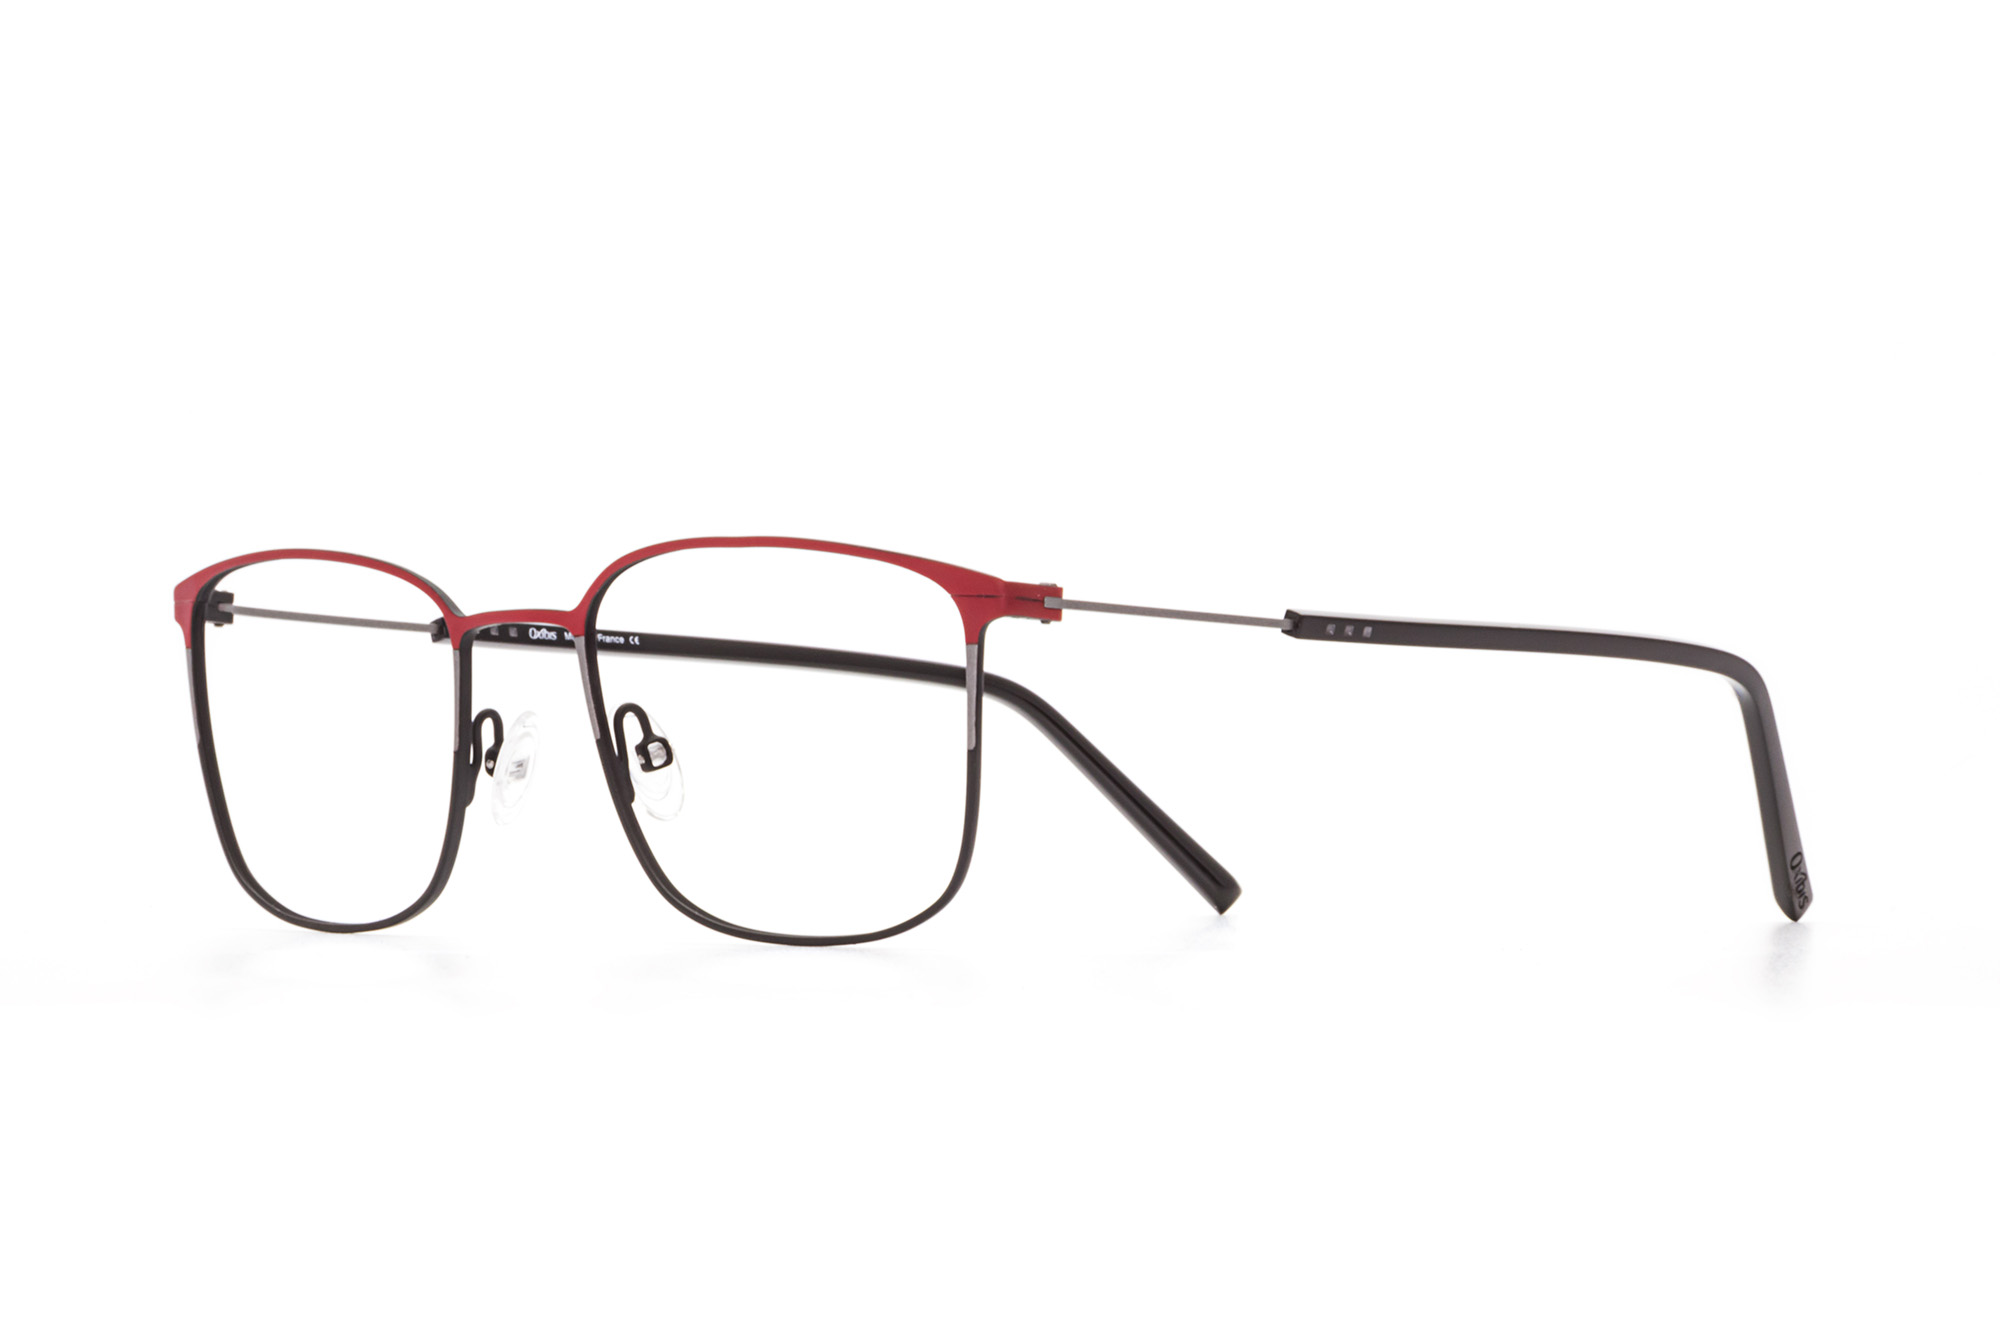 Kullanıma hazır optik tarzda işlenmiş camları ve optik uyumlu çerçevesiyle Oxibis Boost BO3C7 51 orta ekartman kırmızı, gri ve siyah renkli dikdörtgen model erkek gözlüğünü optisyen veya gözlükçülerin sunacağı numarasız veya numaralı cam özelleştirmeleriyle size en yakın gözlükçüden satın alabilirsiniz.